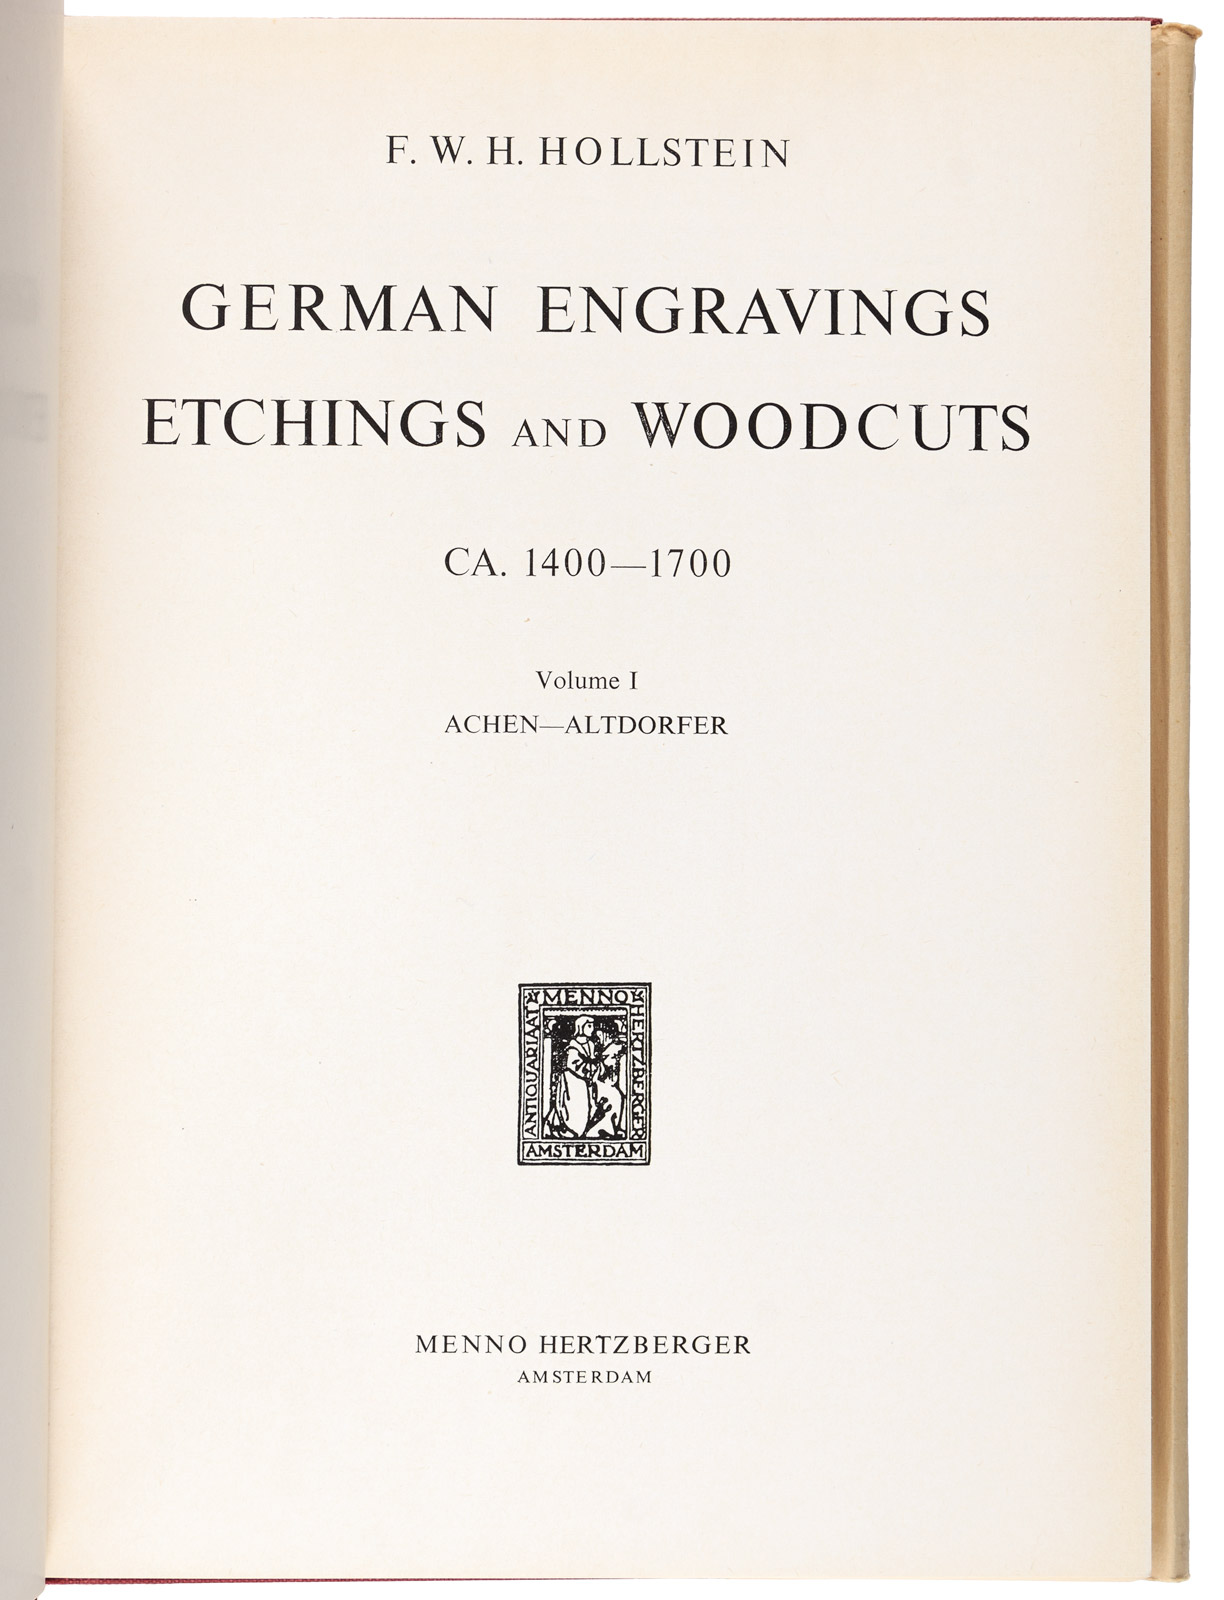 Hollstein's German Engravings, 13 volumes - Image 2 of 2